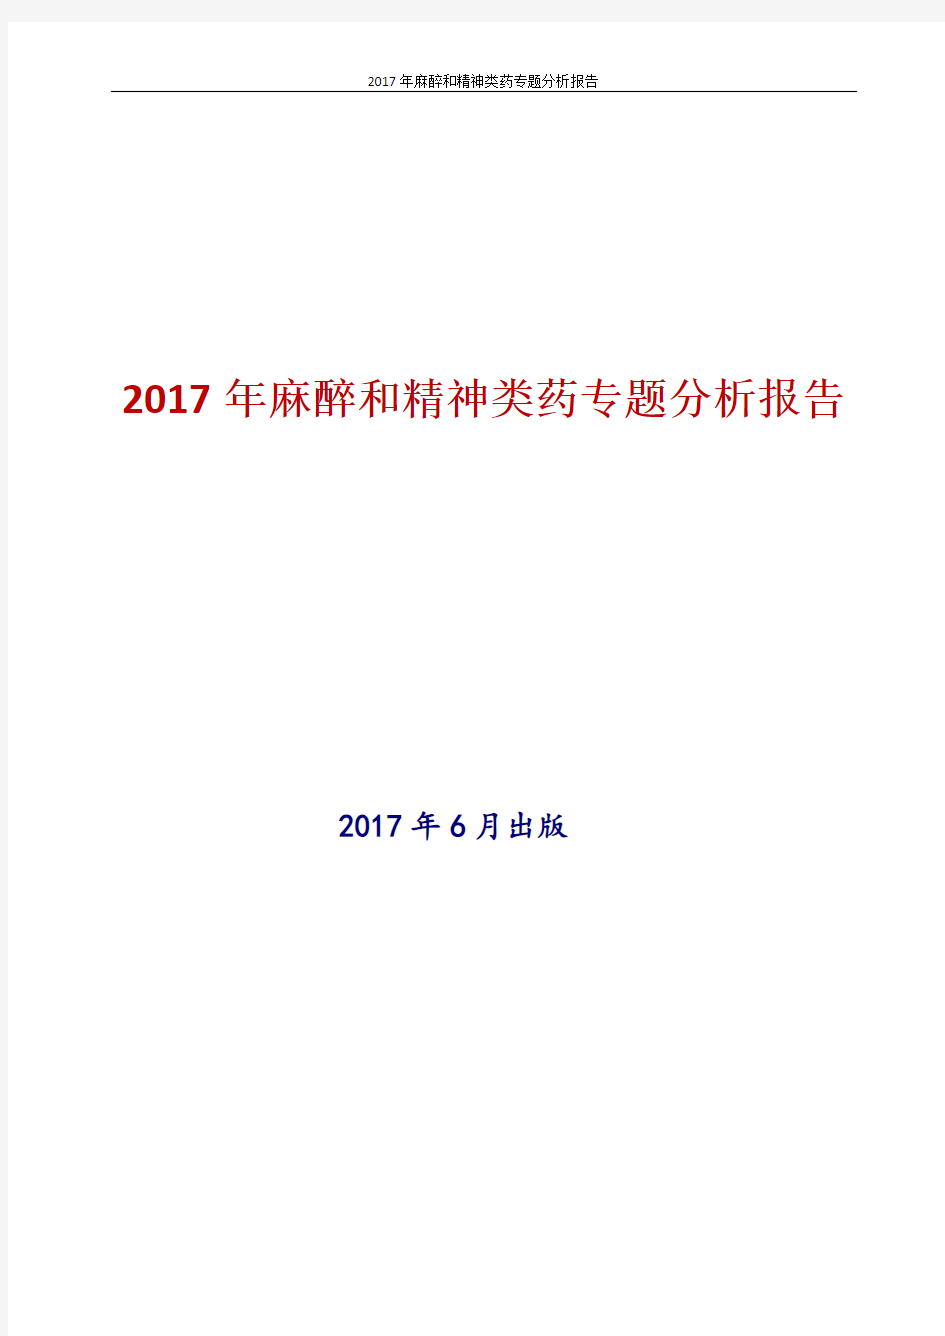 2017年最新版中国麻醉和精神类药专题分析报告